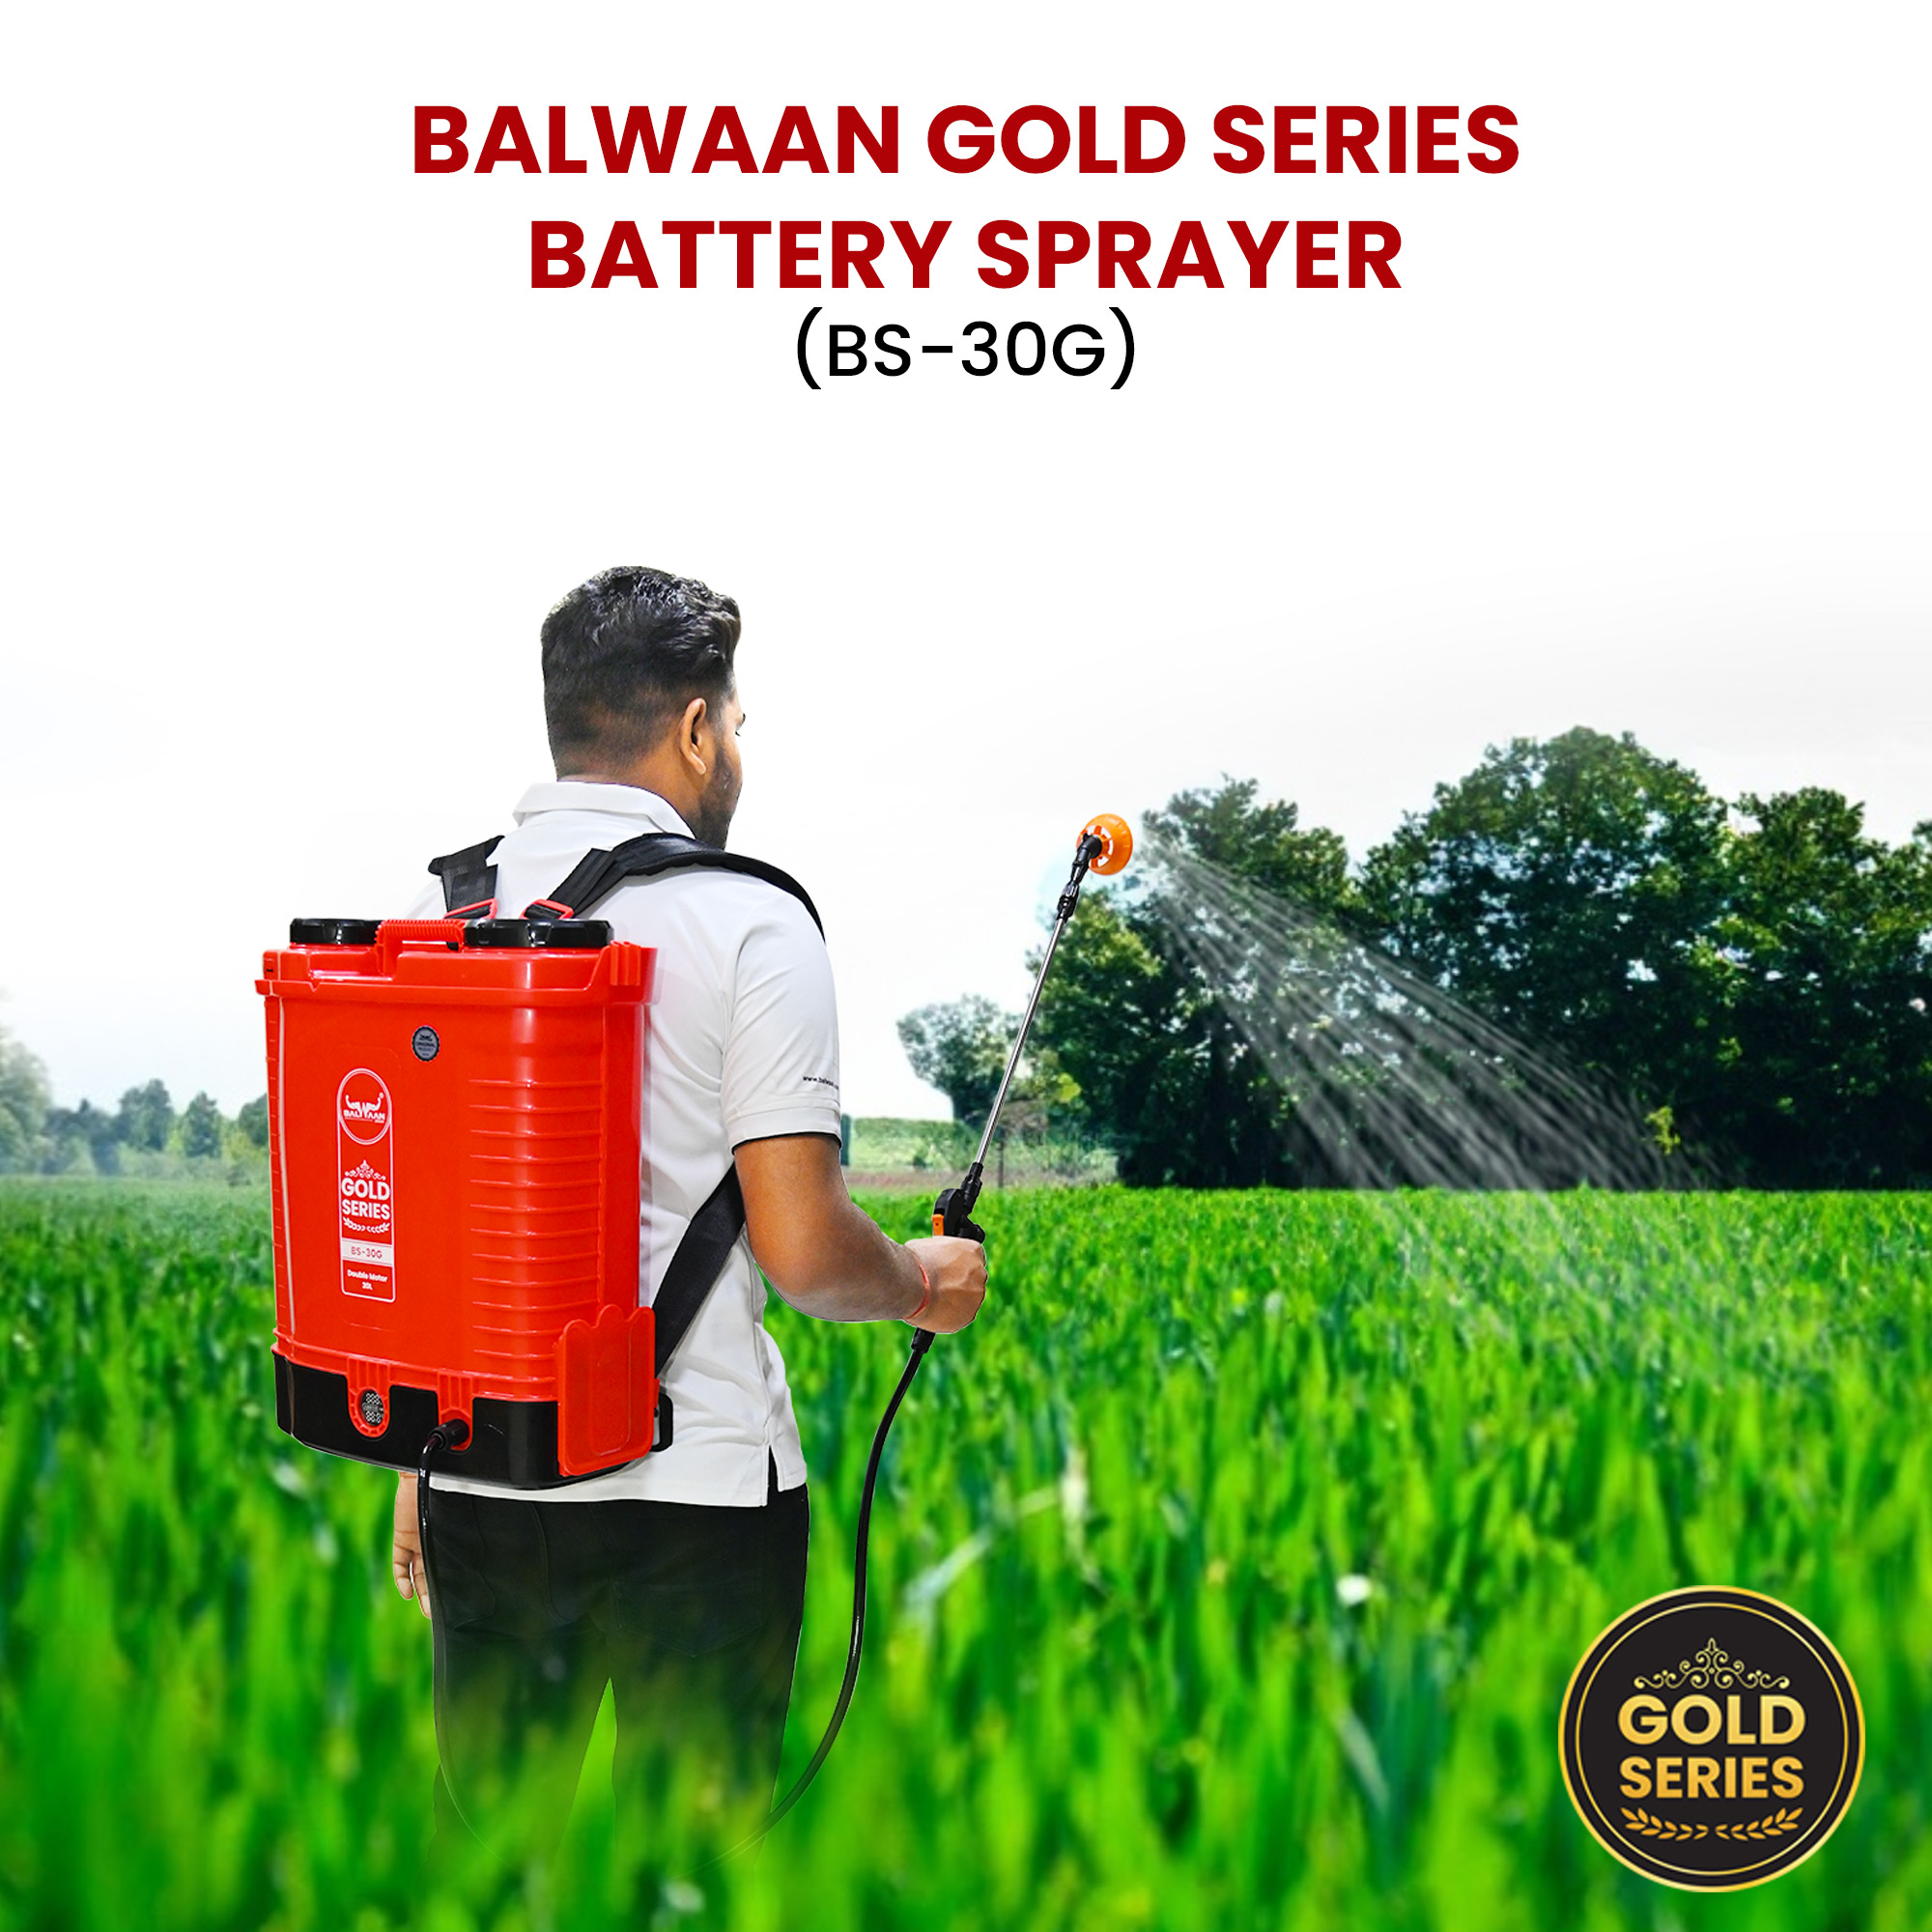 Balwaan Gold Series BS-30G Double Motor Battery Sprayer